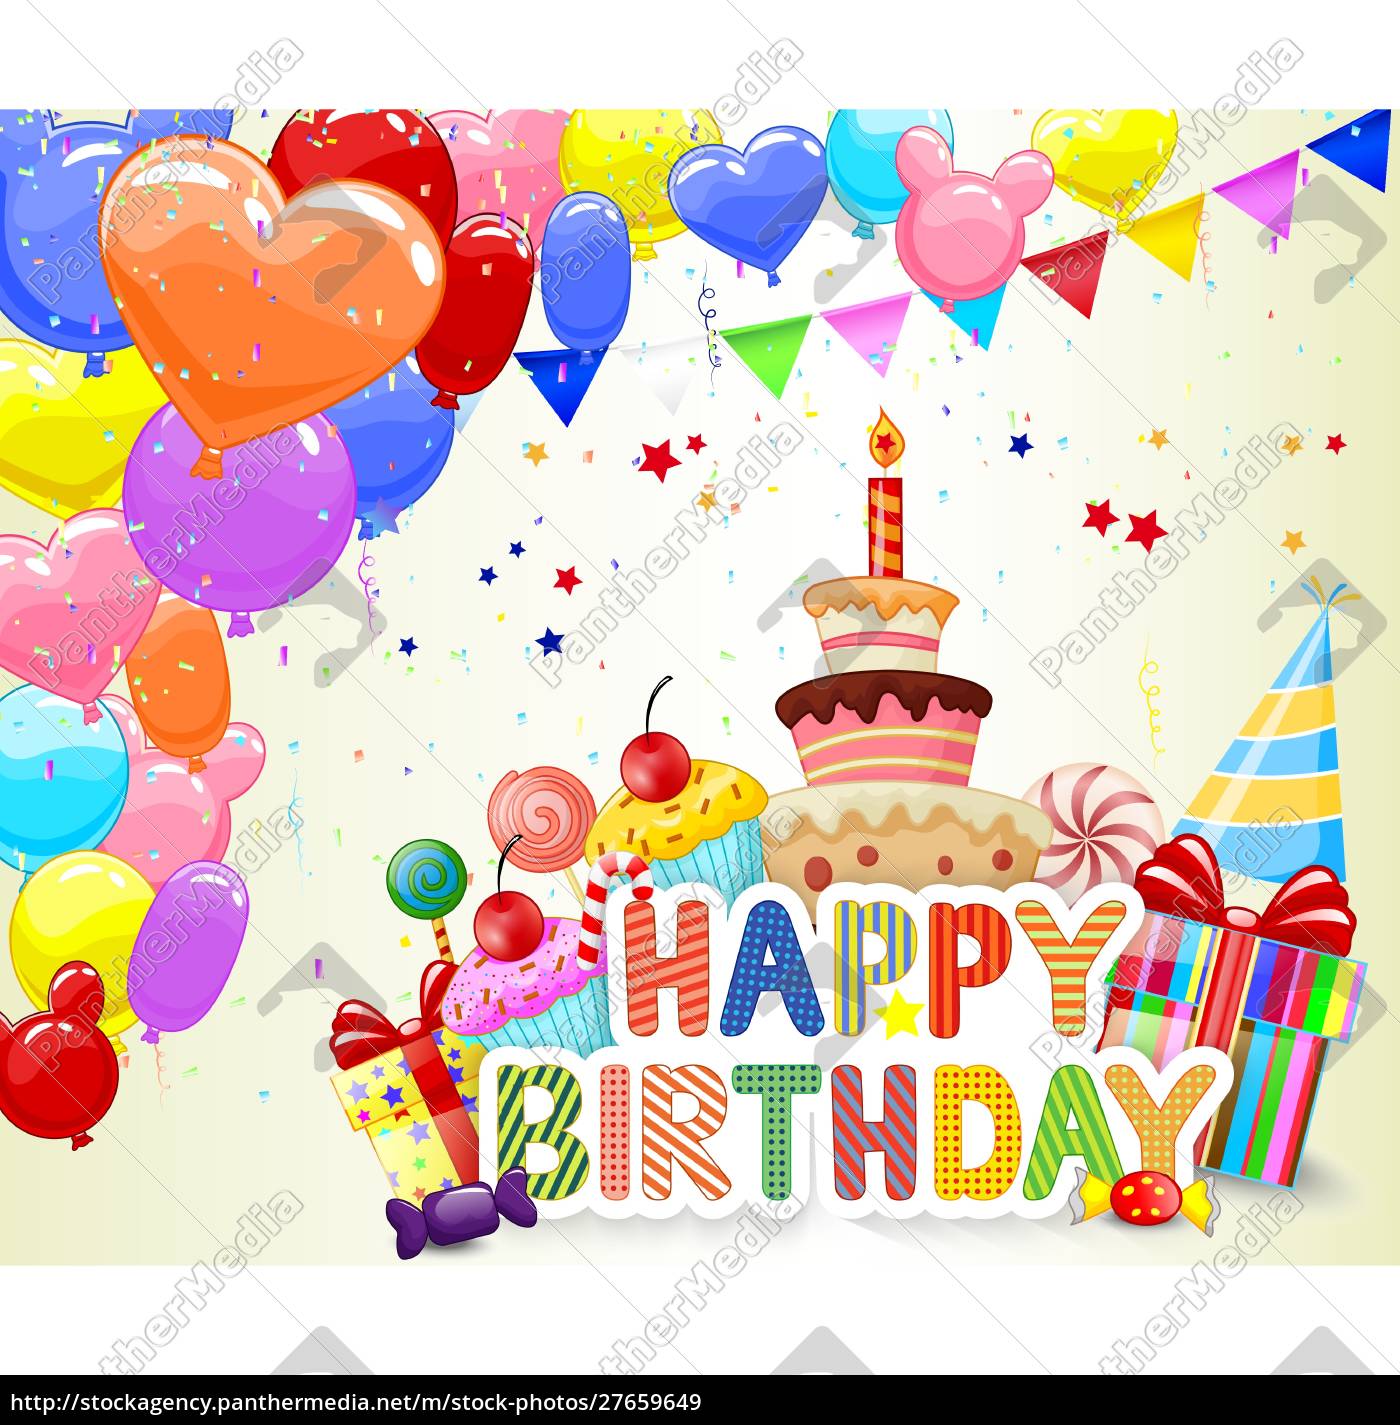 Desenho de aniversário com balão colorido e bolo de aniversário